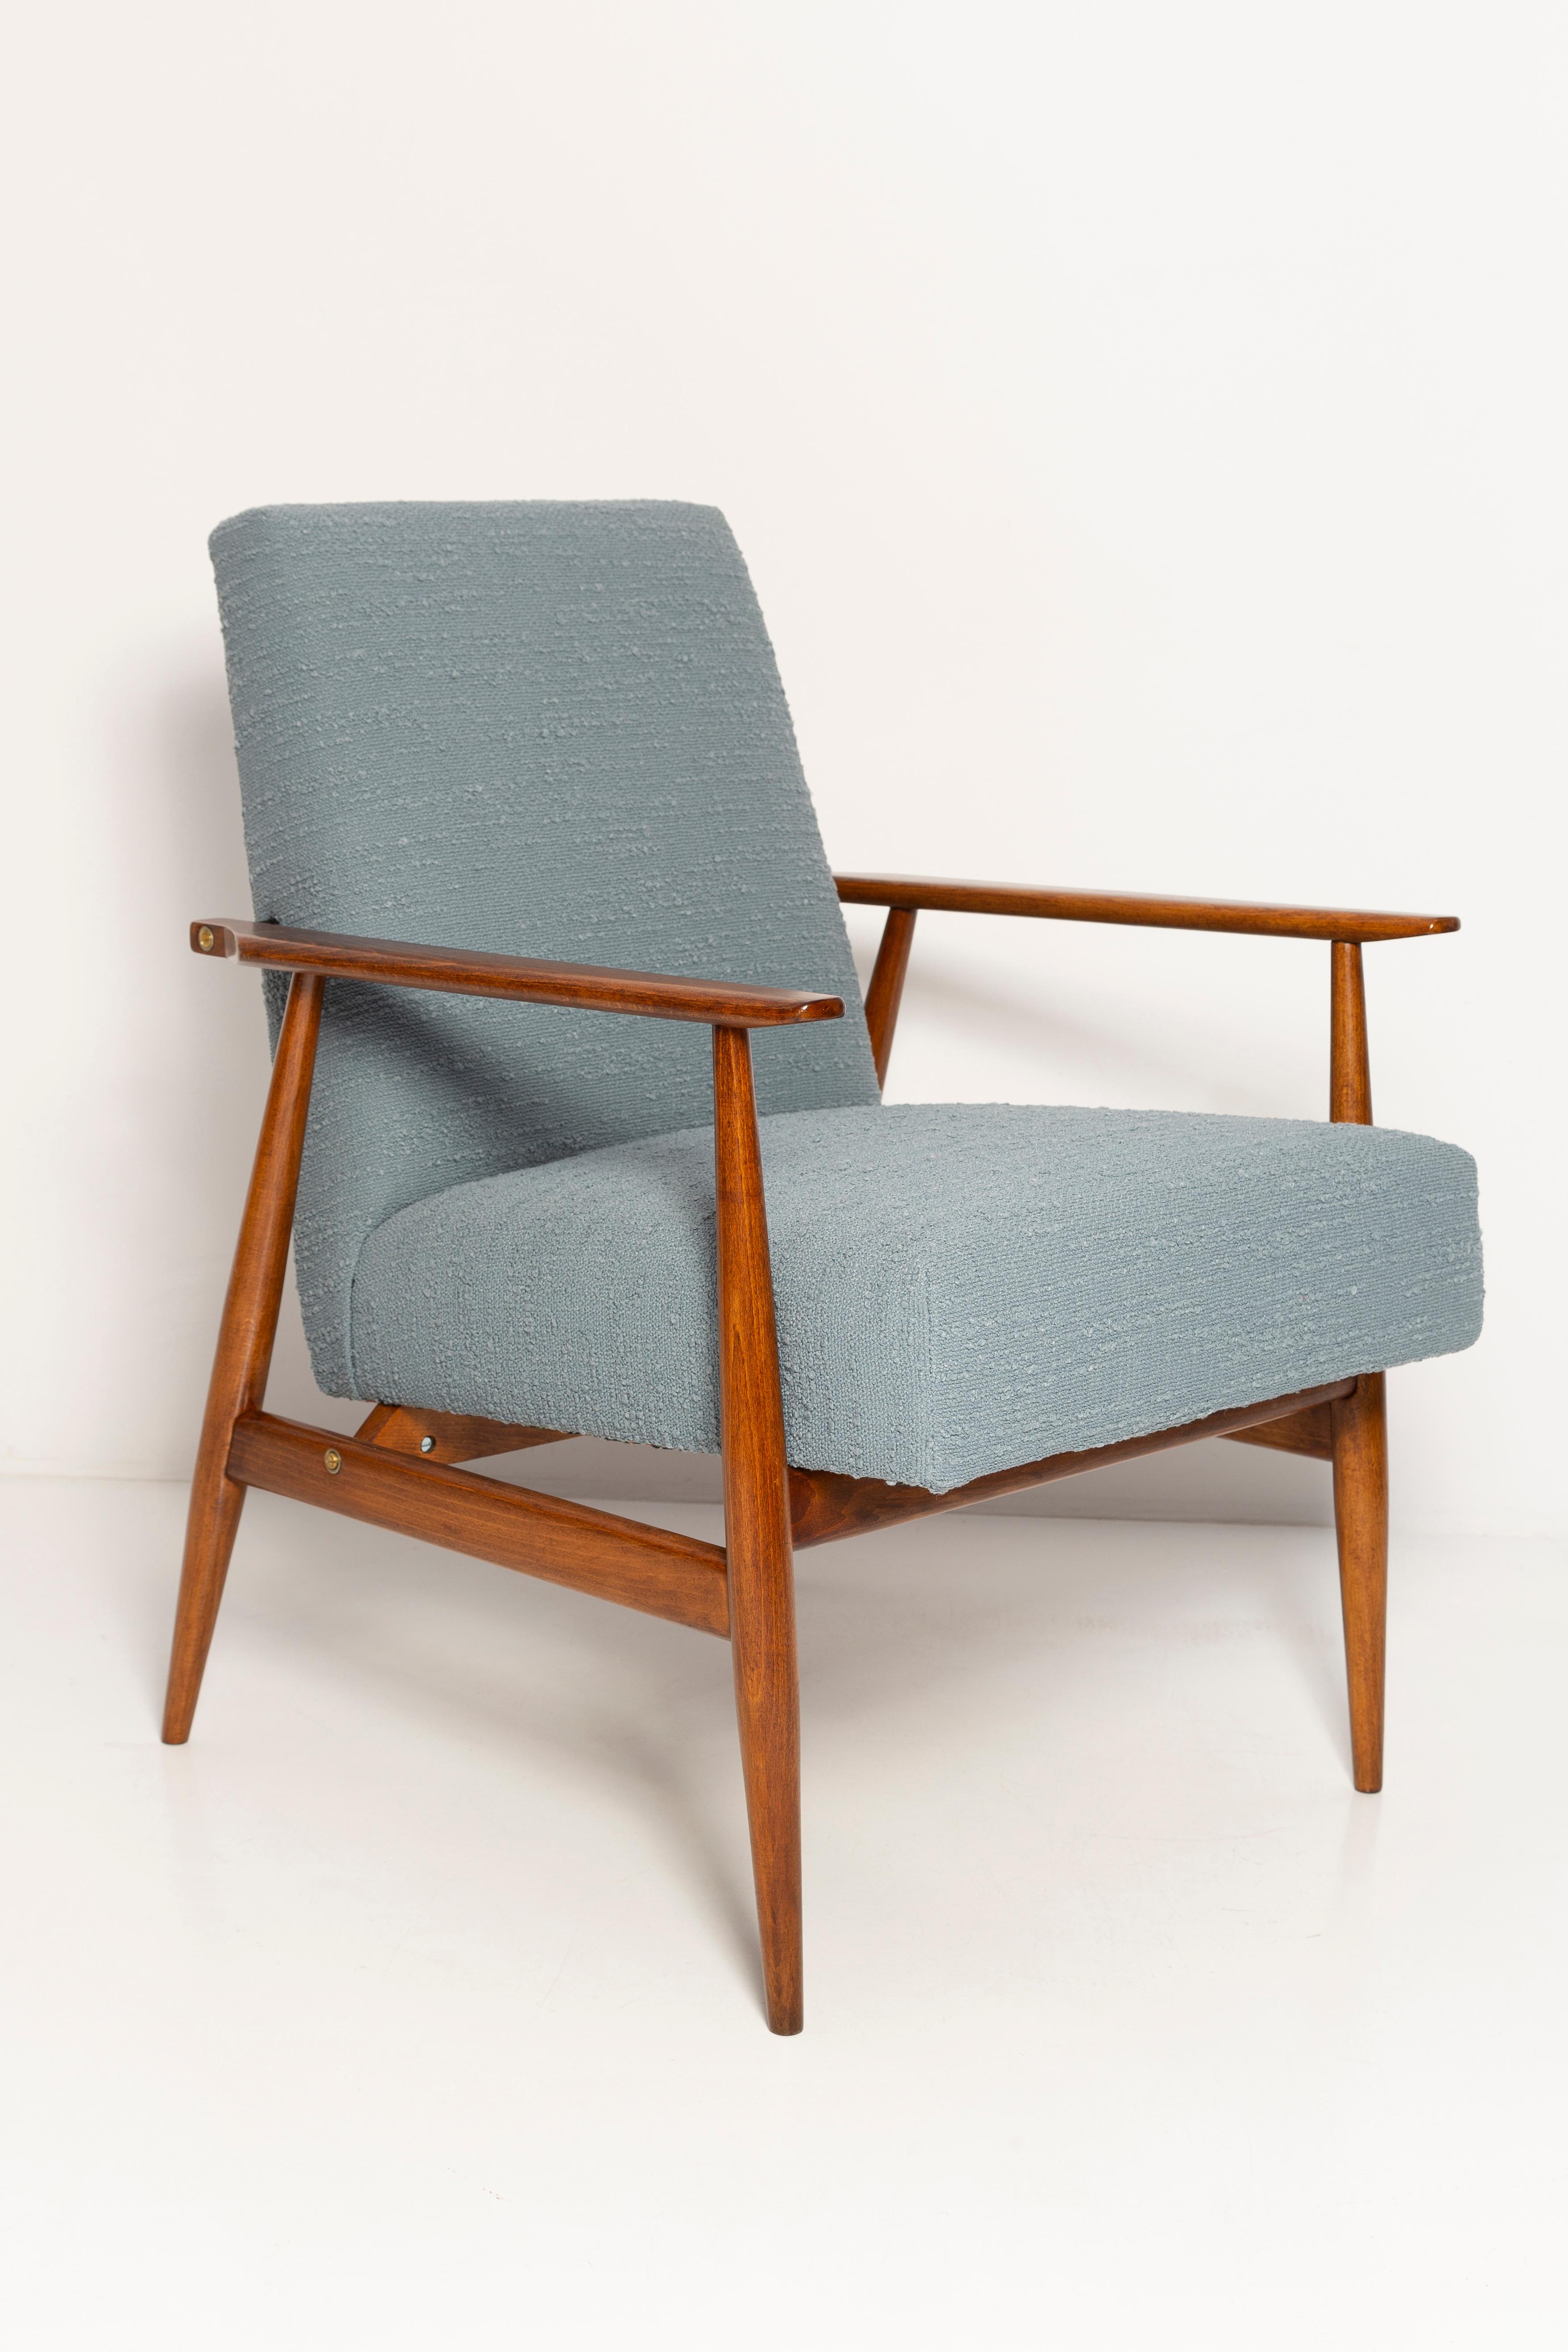 Magnifique fauteuil restauré, conçu par Henryk Lis. Meubles après rénovation complète de la menuiserie et de la tapisserie d'ameublement. Le tissu, qui recouvre le dossier et l'assise, est un tissu mélangé italien de haute qualité de couleur grise.